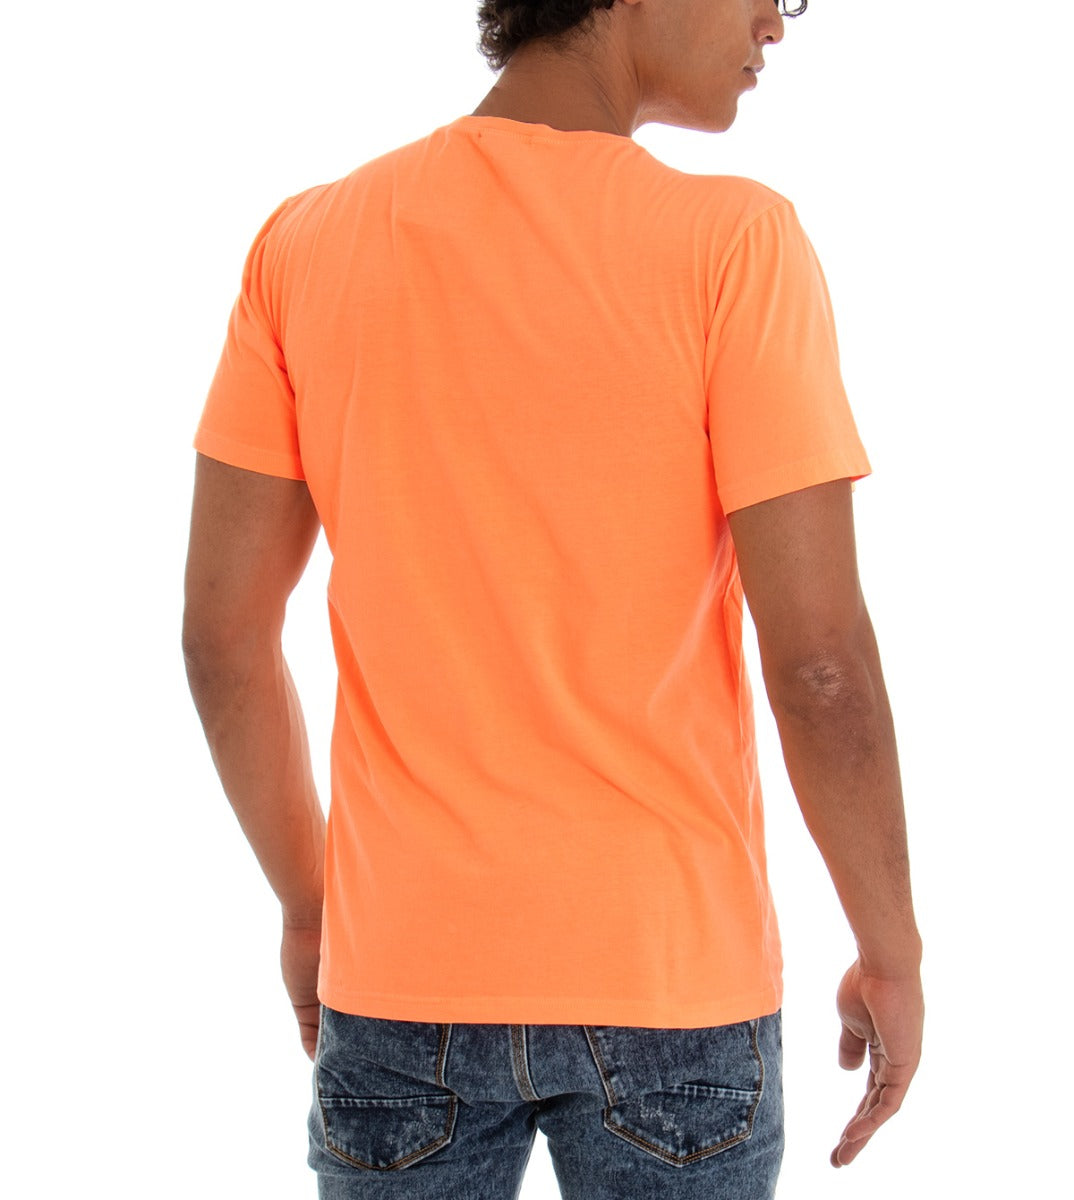 T-shirt Uomo Maglia Maniche Corte Cotone Tinta Unita Arancio Fluo Girocollo GIOSAL